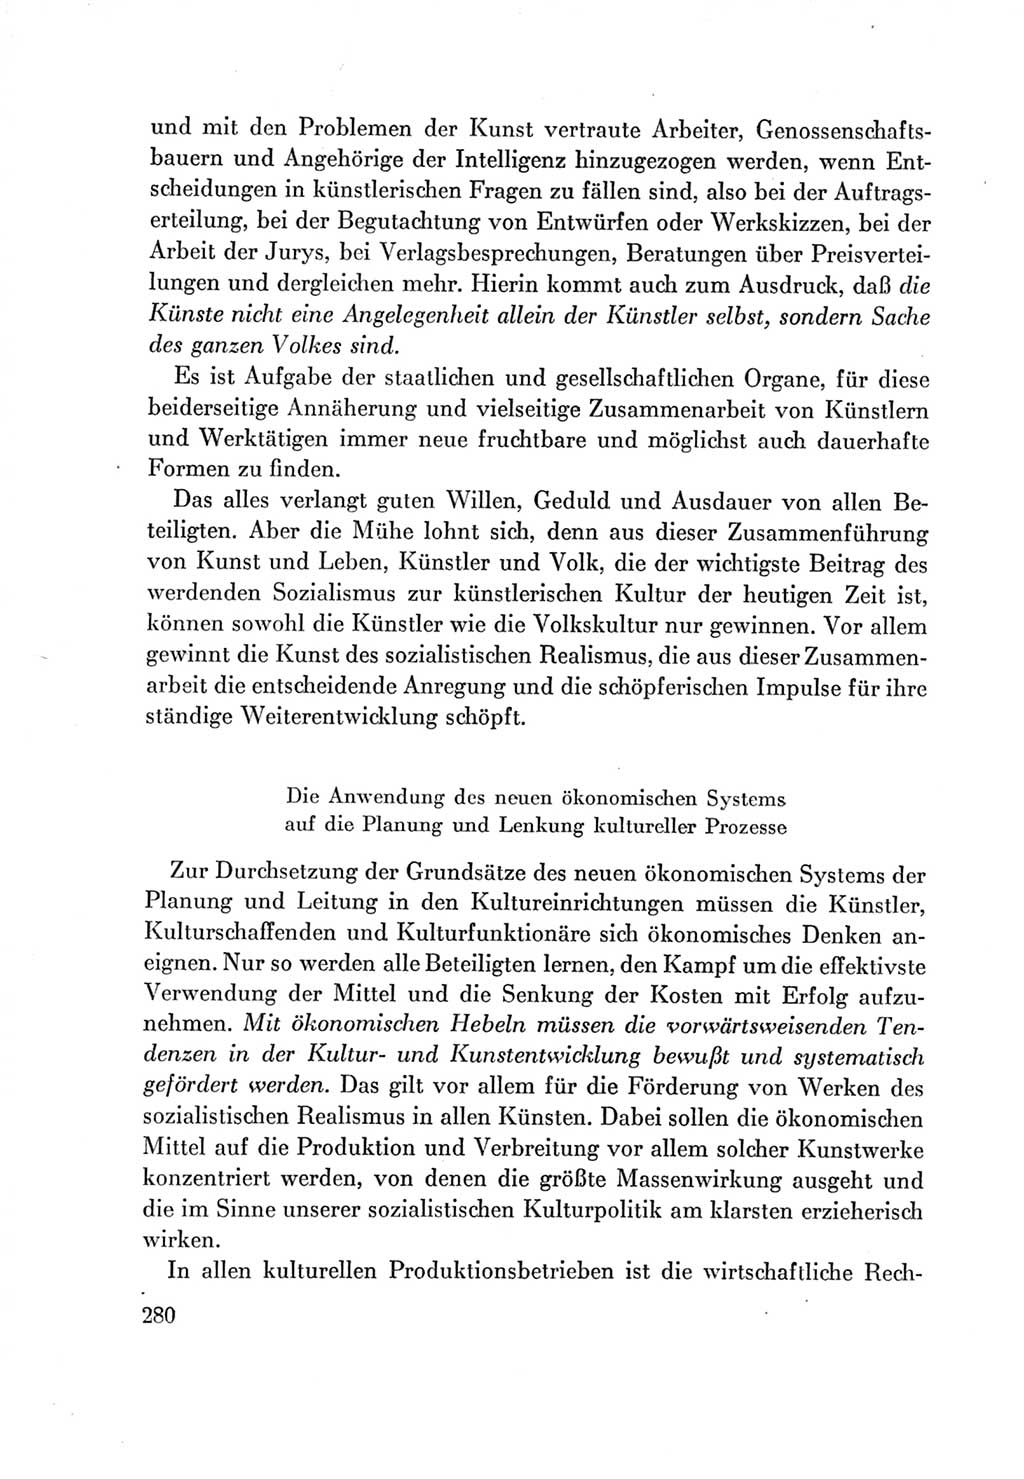 Protokoll der Verhandlungen des Ⅶ. Parteitages der Sozialistischen Einheitspartei Deutschlands (SED) [Deutsche Demokratische Republik (DDR)] 1967, Band Ⅰ, Seite 280 (Prot. Verh. Ⅶ. PT SED DDR 1967, Bd. Ⅰ, S. 280)